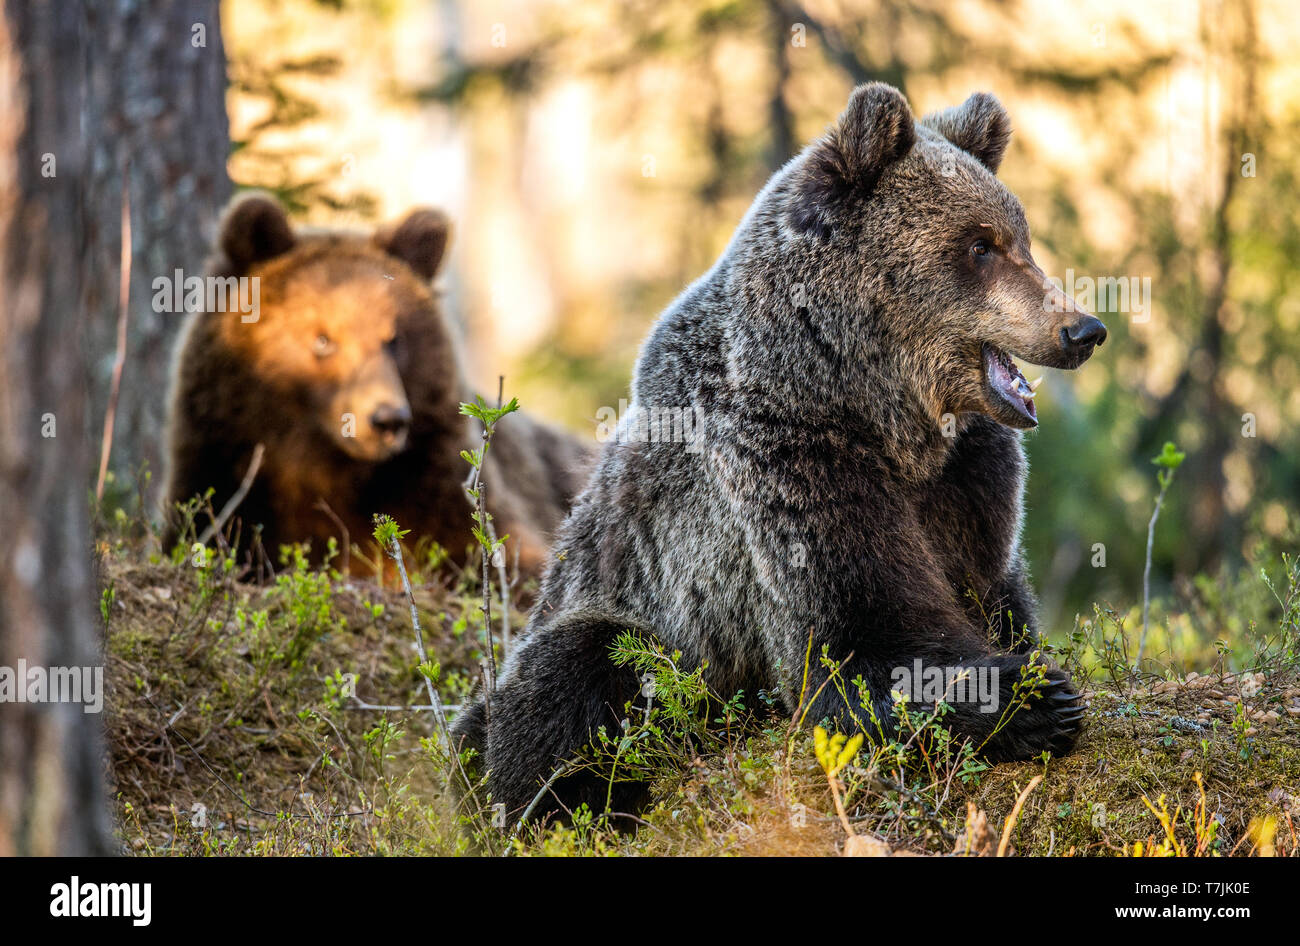 Braunbären im Sommer Wald bei Sonnenuntergang. Wissenschaftlicher Name: Ursus arctos. Stockfoto